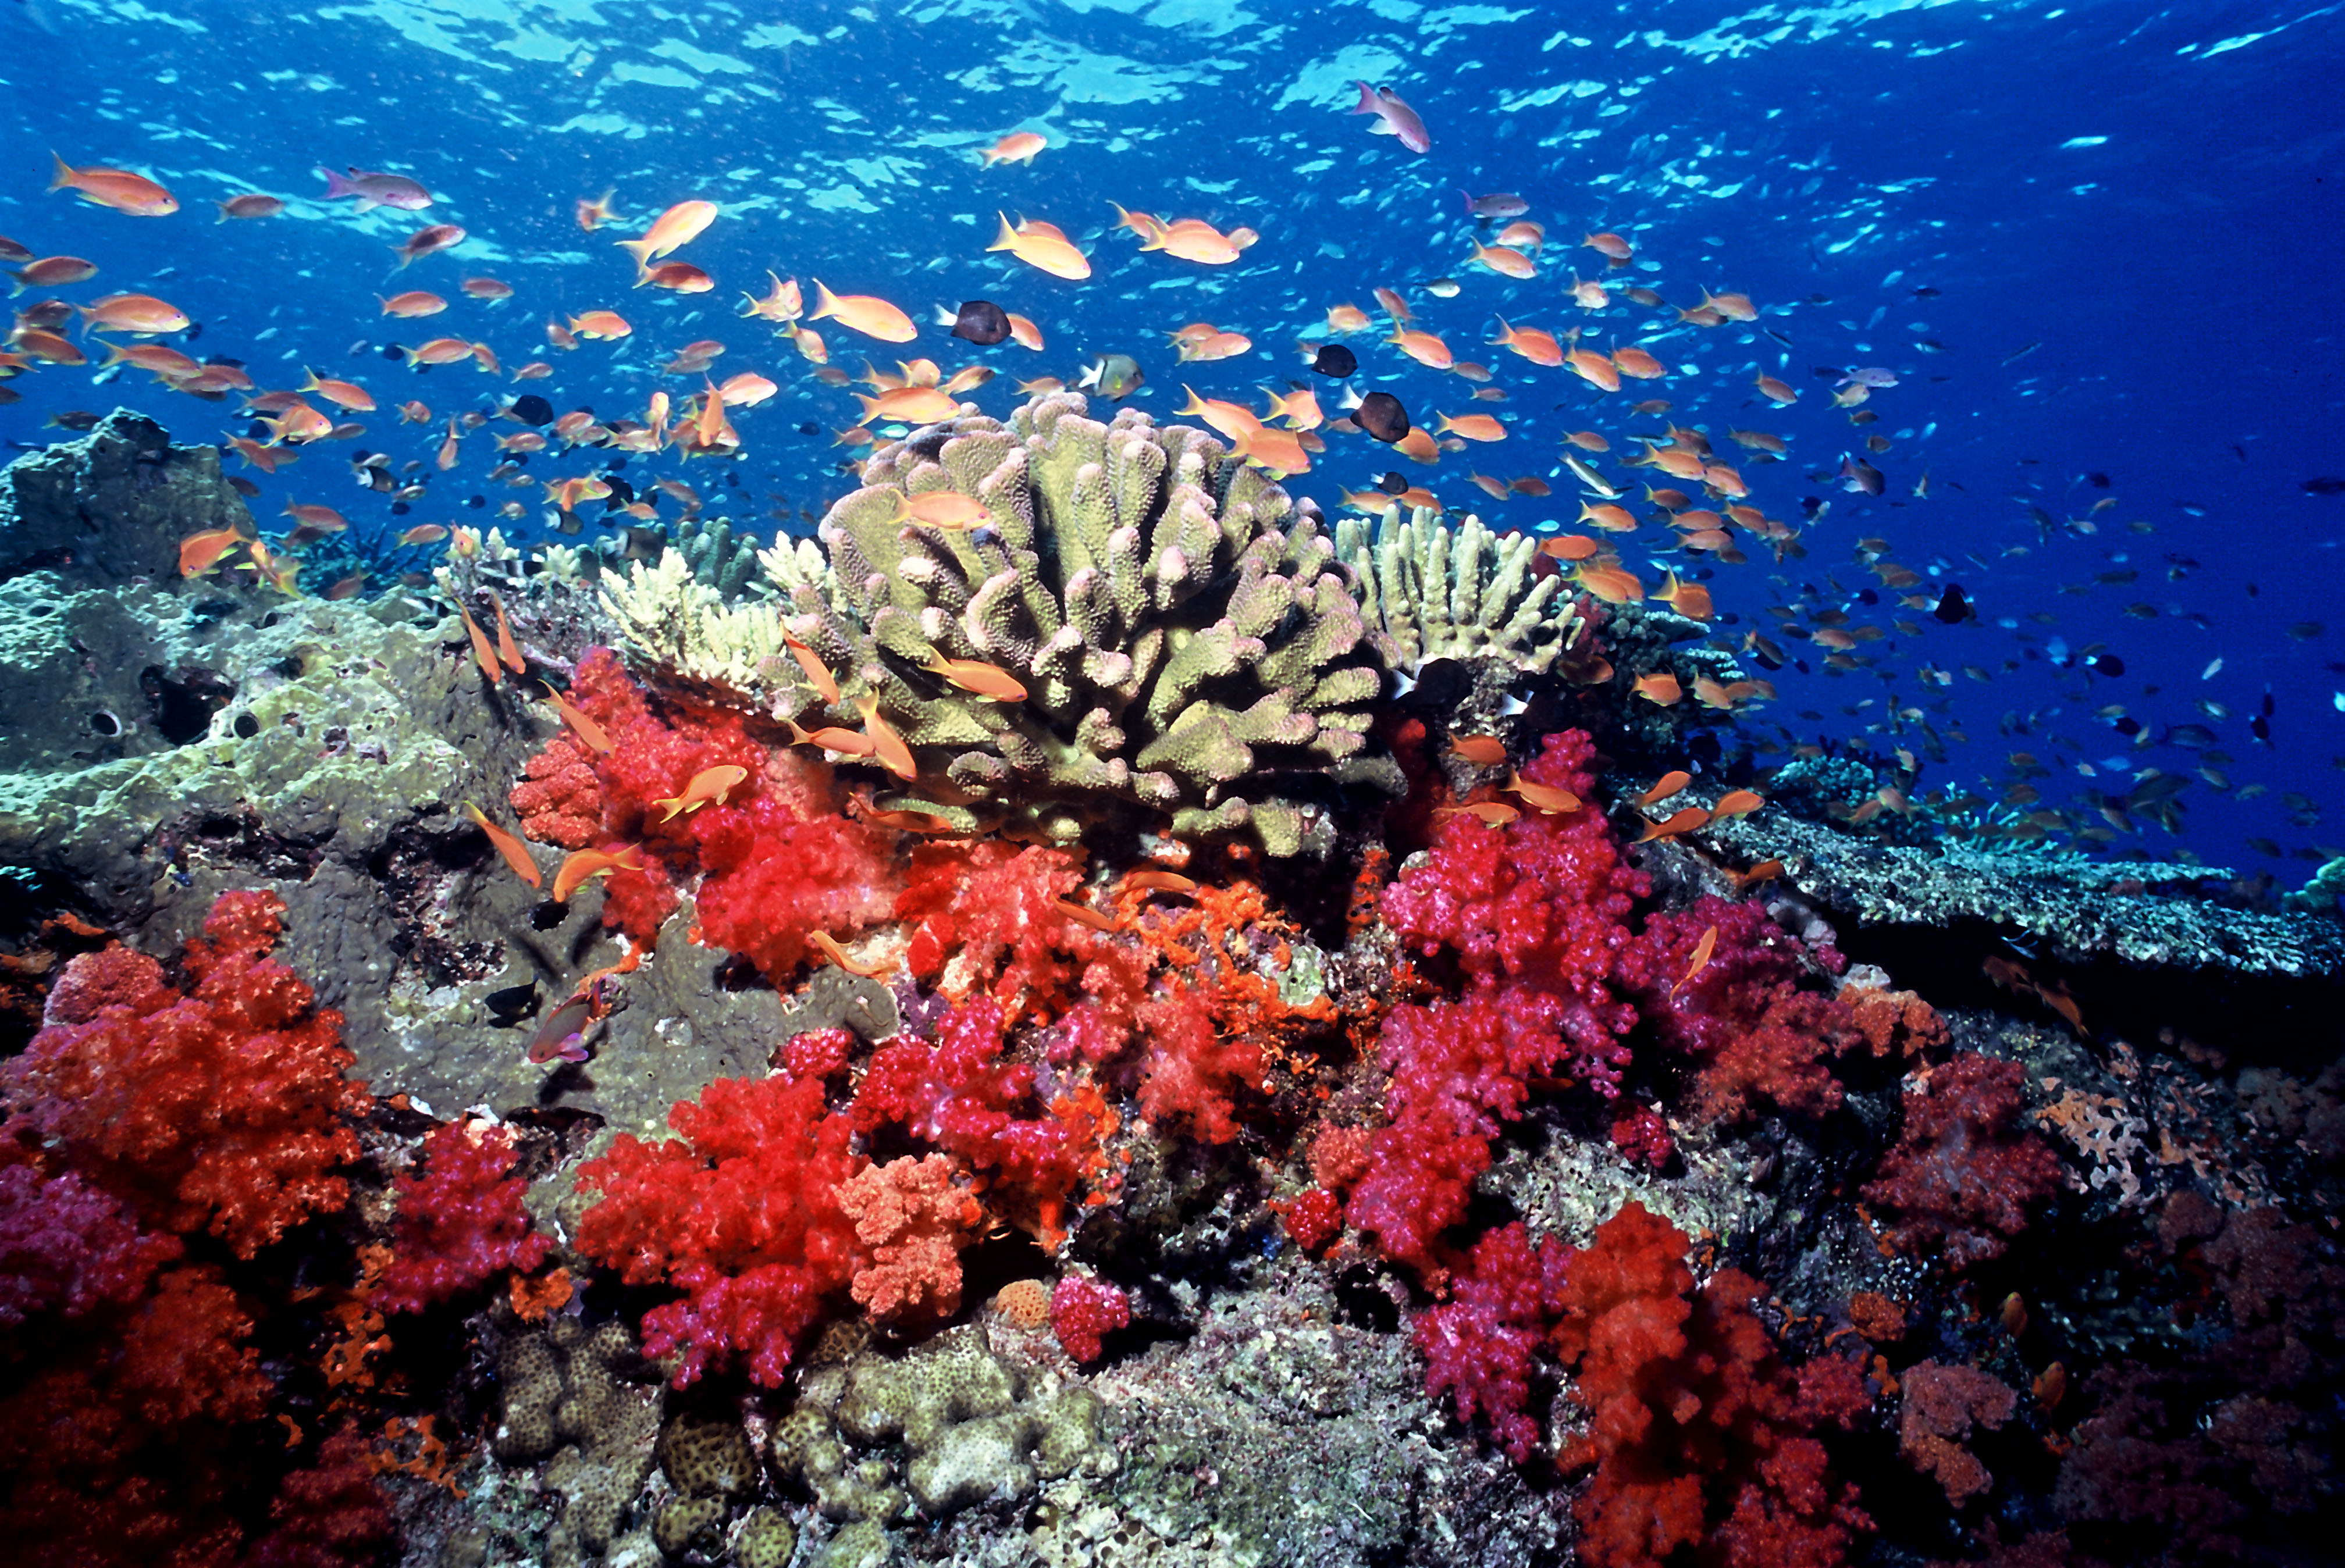 As mudanças climáticas é uma das ameaças à integridade dos ecossistemas marinhos, assim como a poluição, a sobrepesca e a destruição de habitats